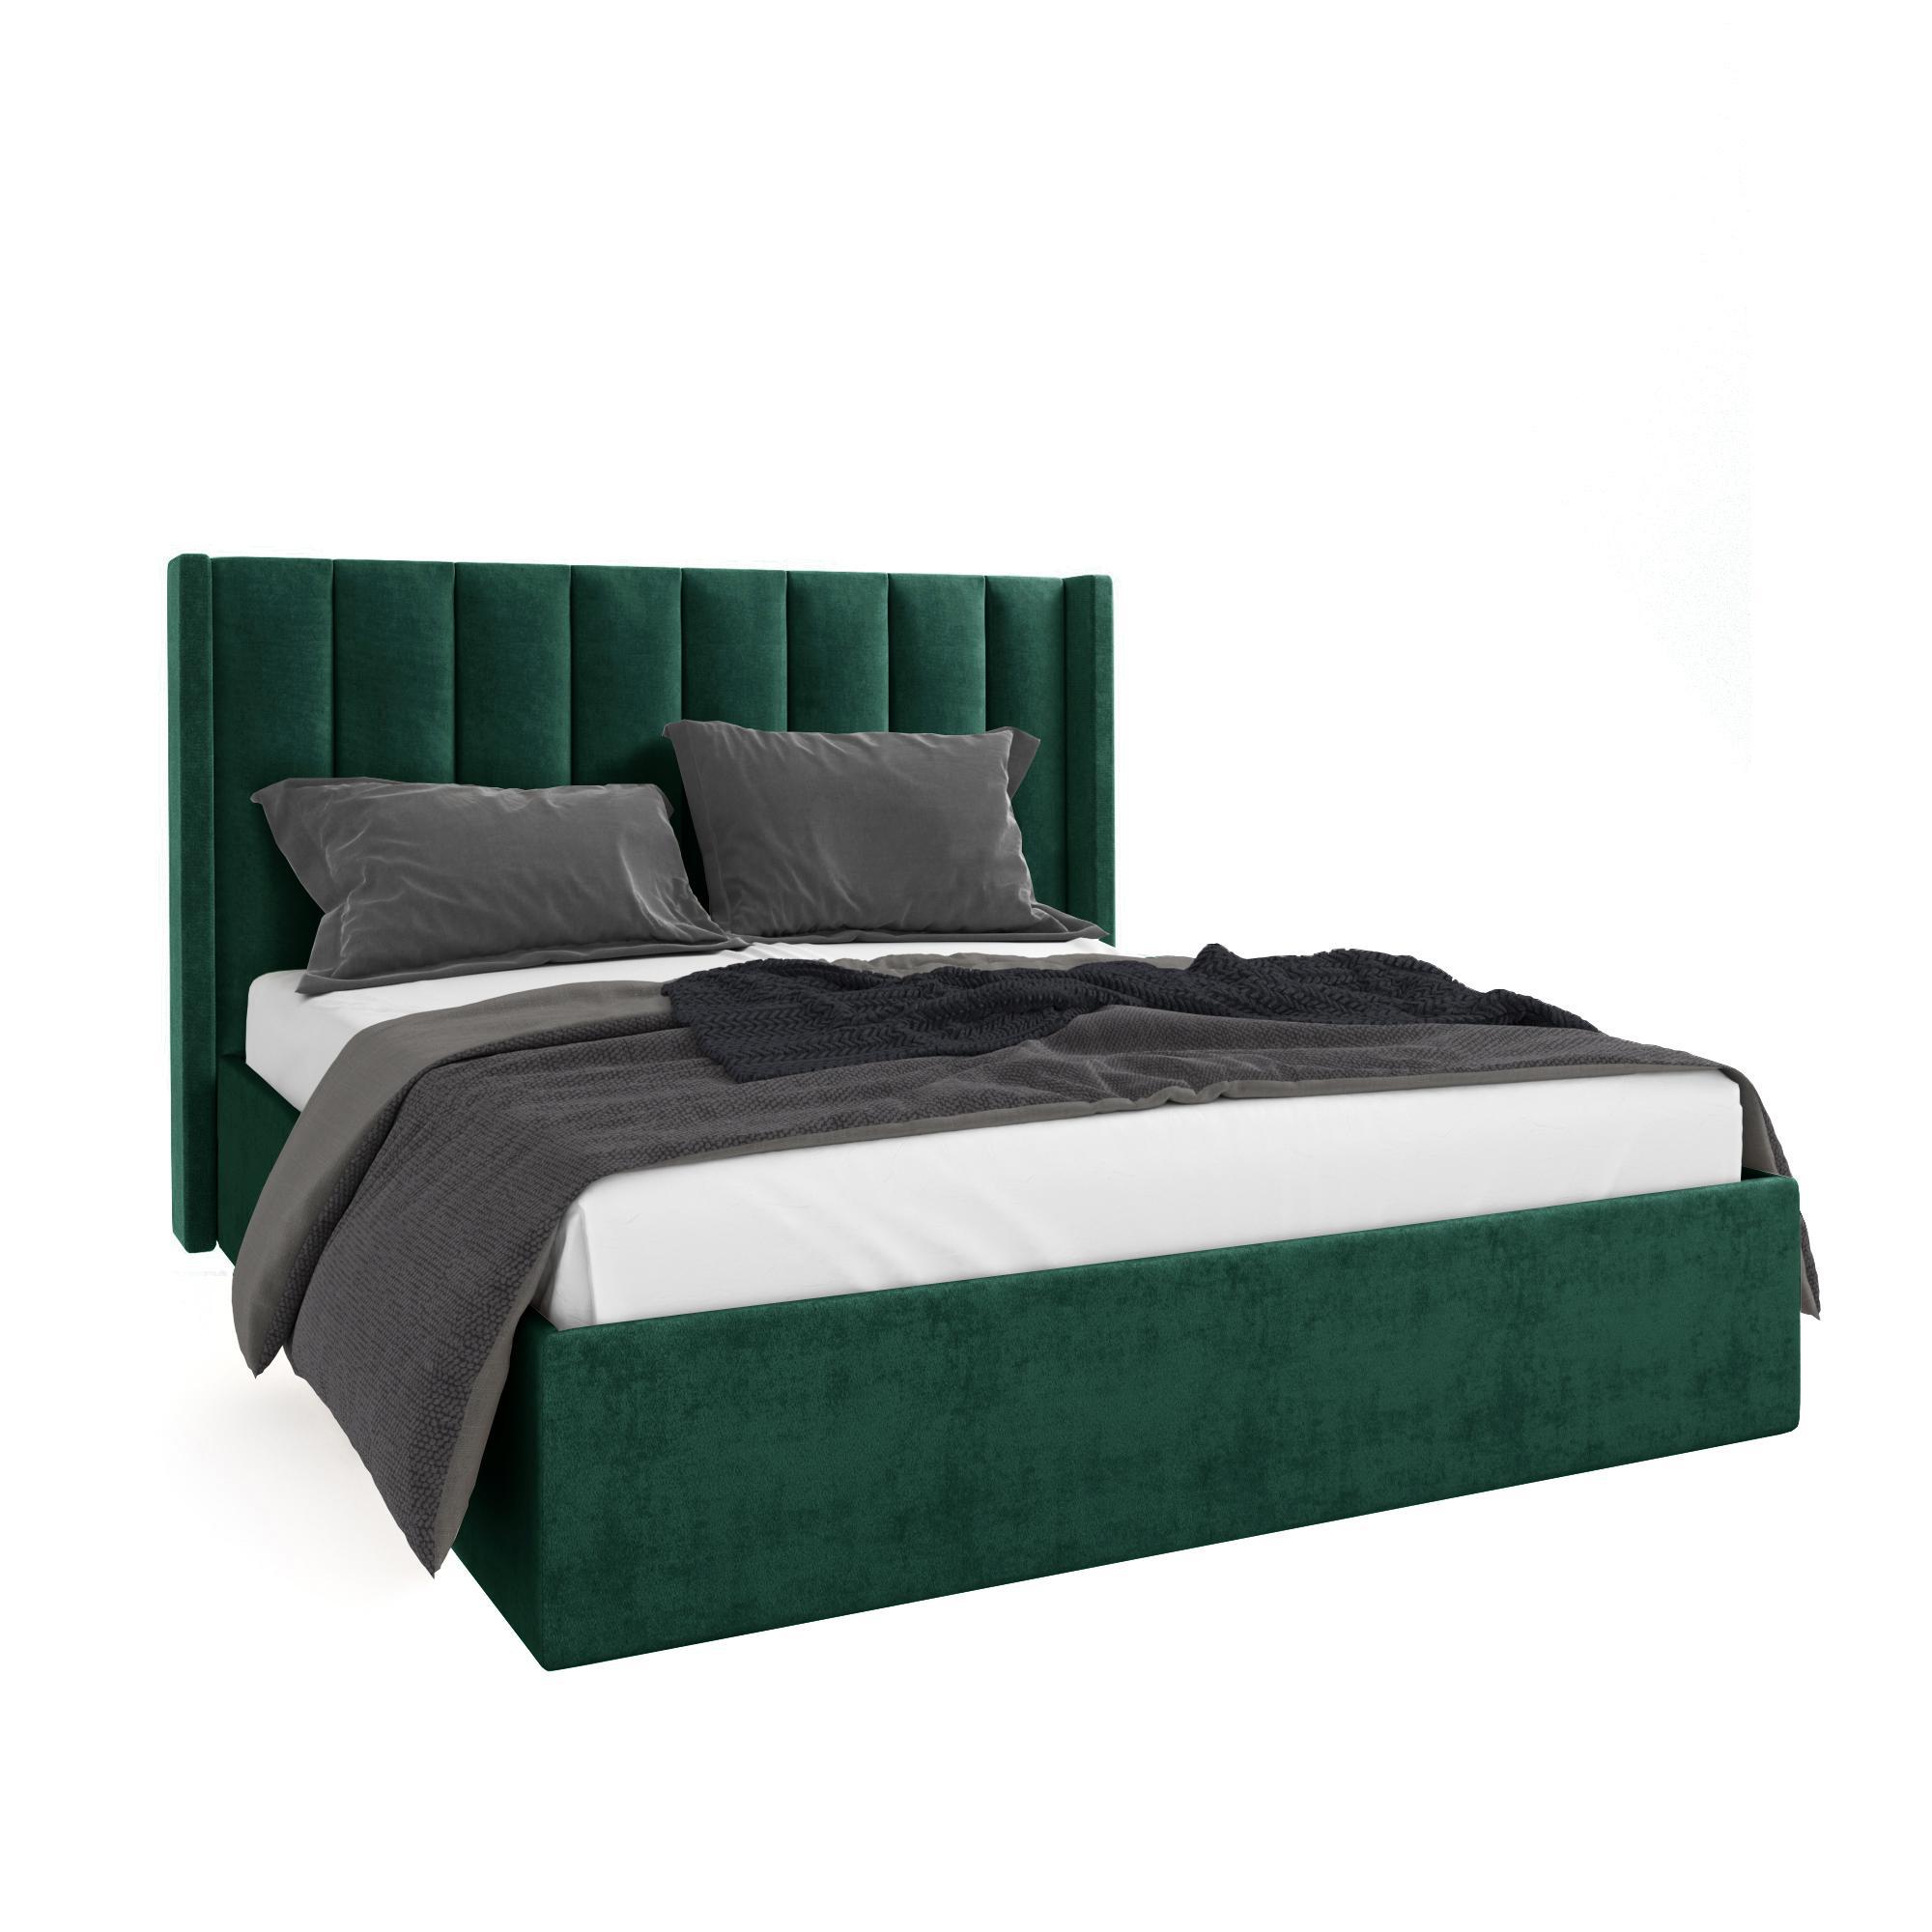 Кровать Жаклиз зеленая 90х200 изображение товара